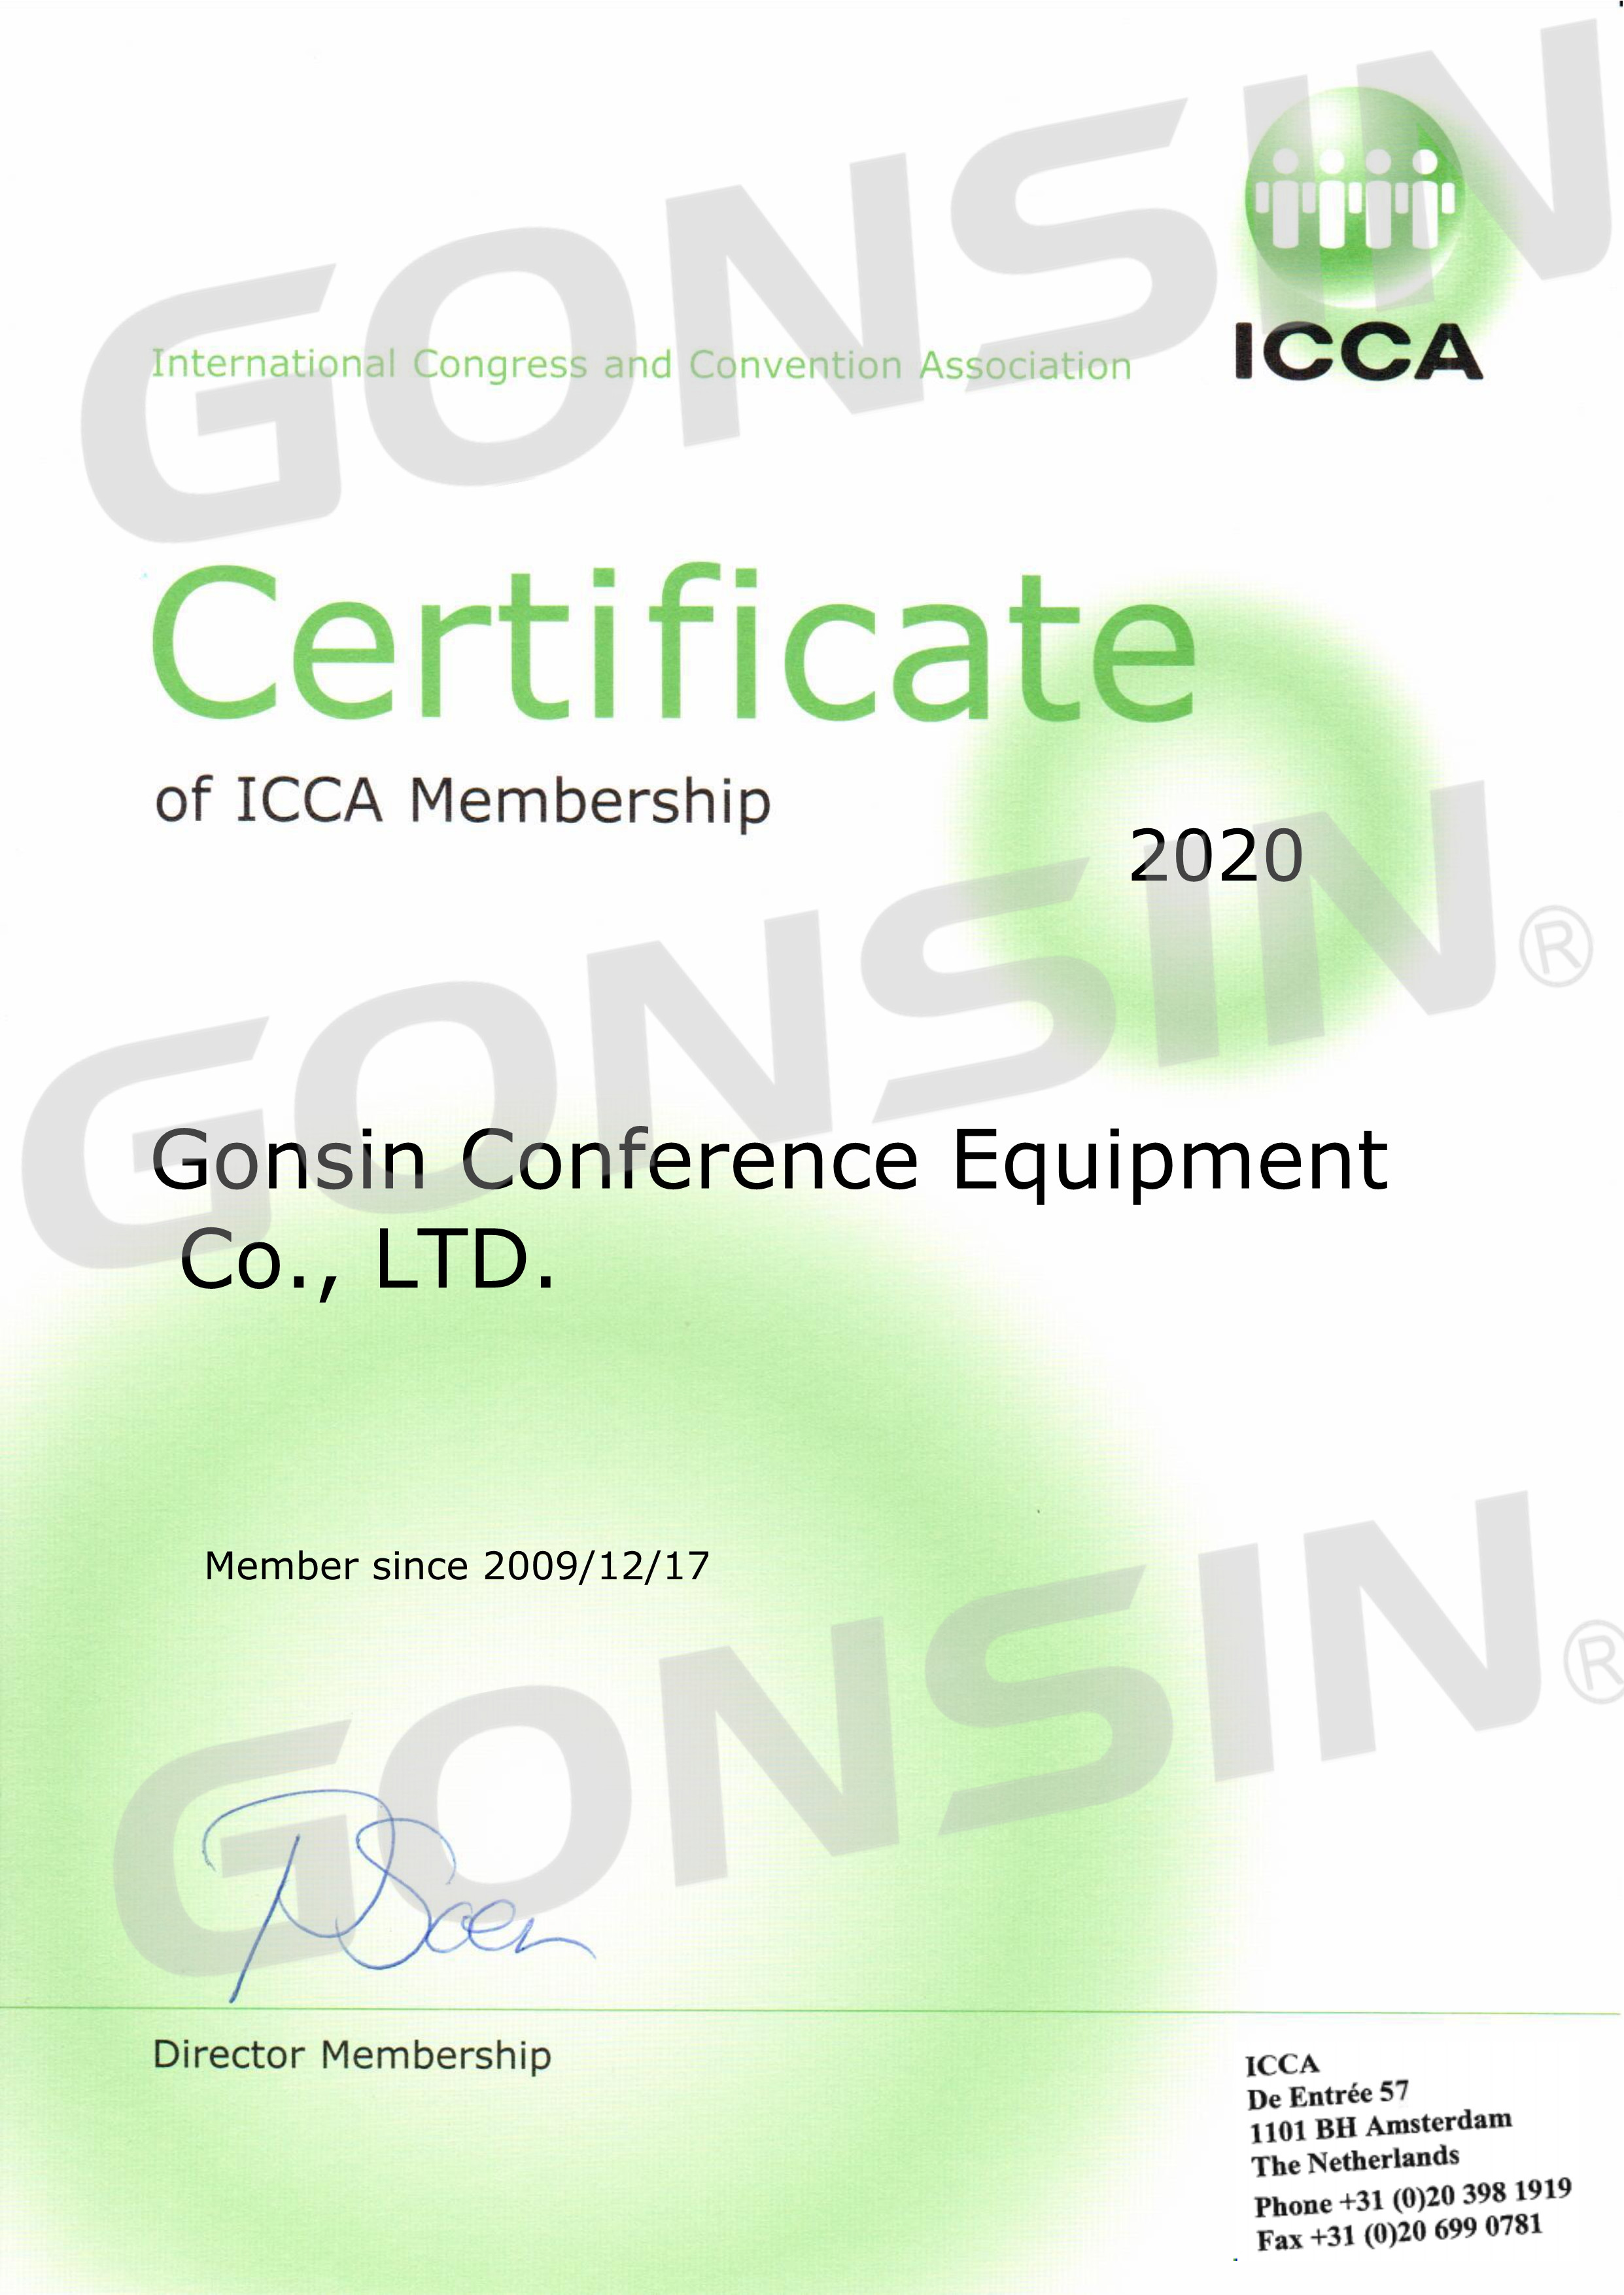 ICCA Membership